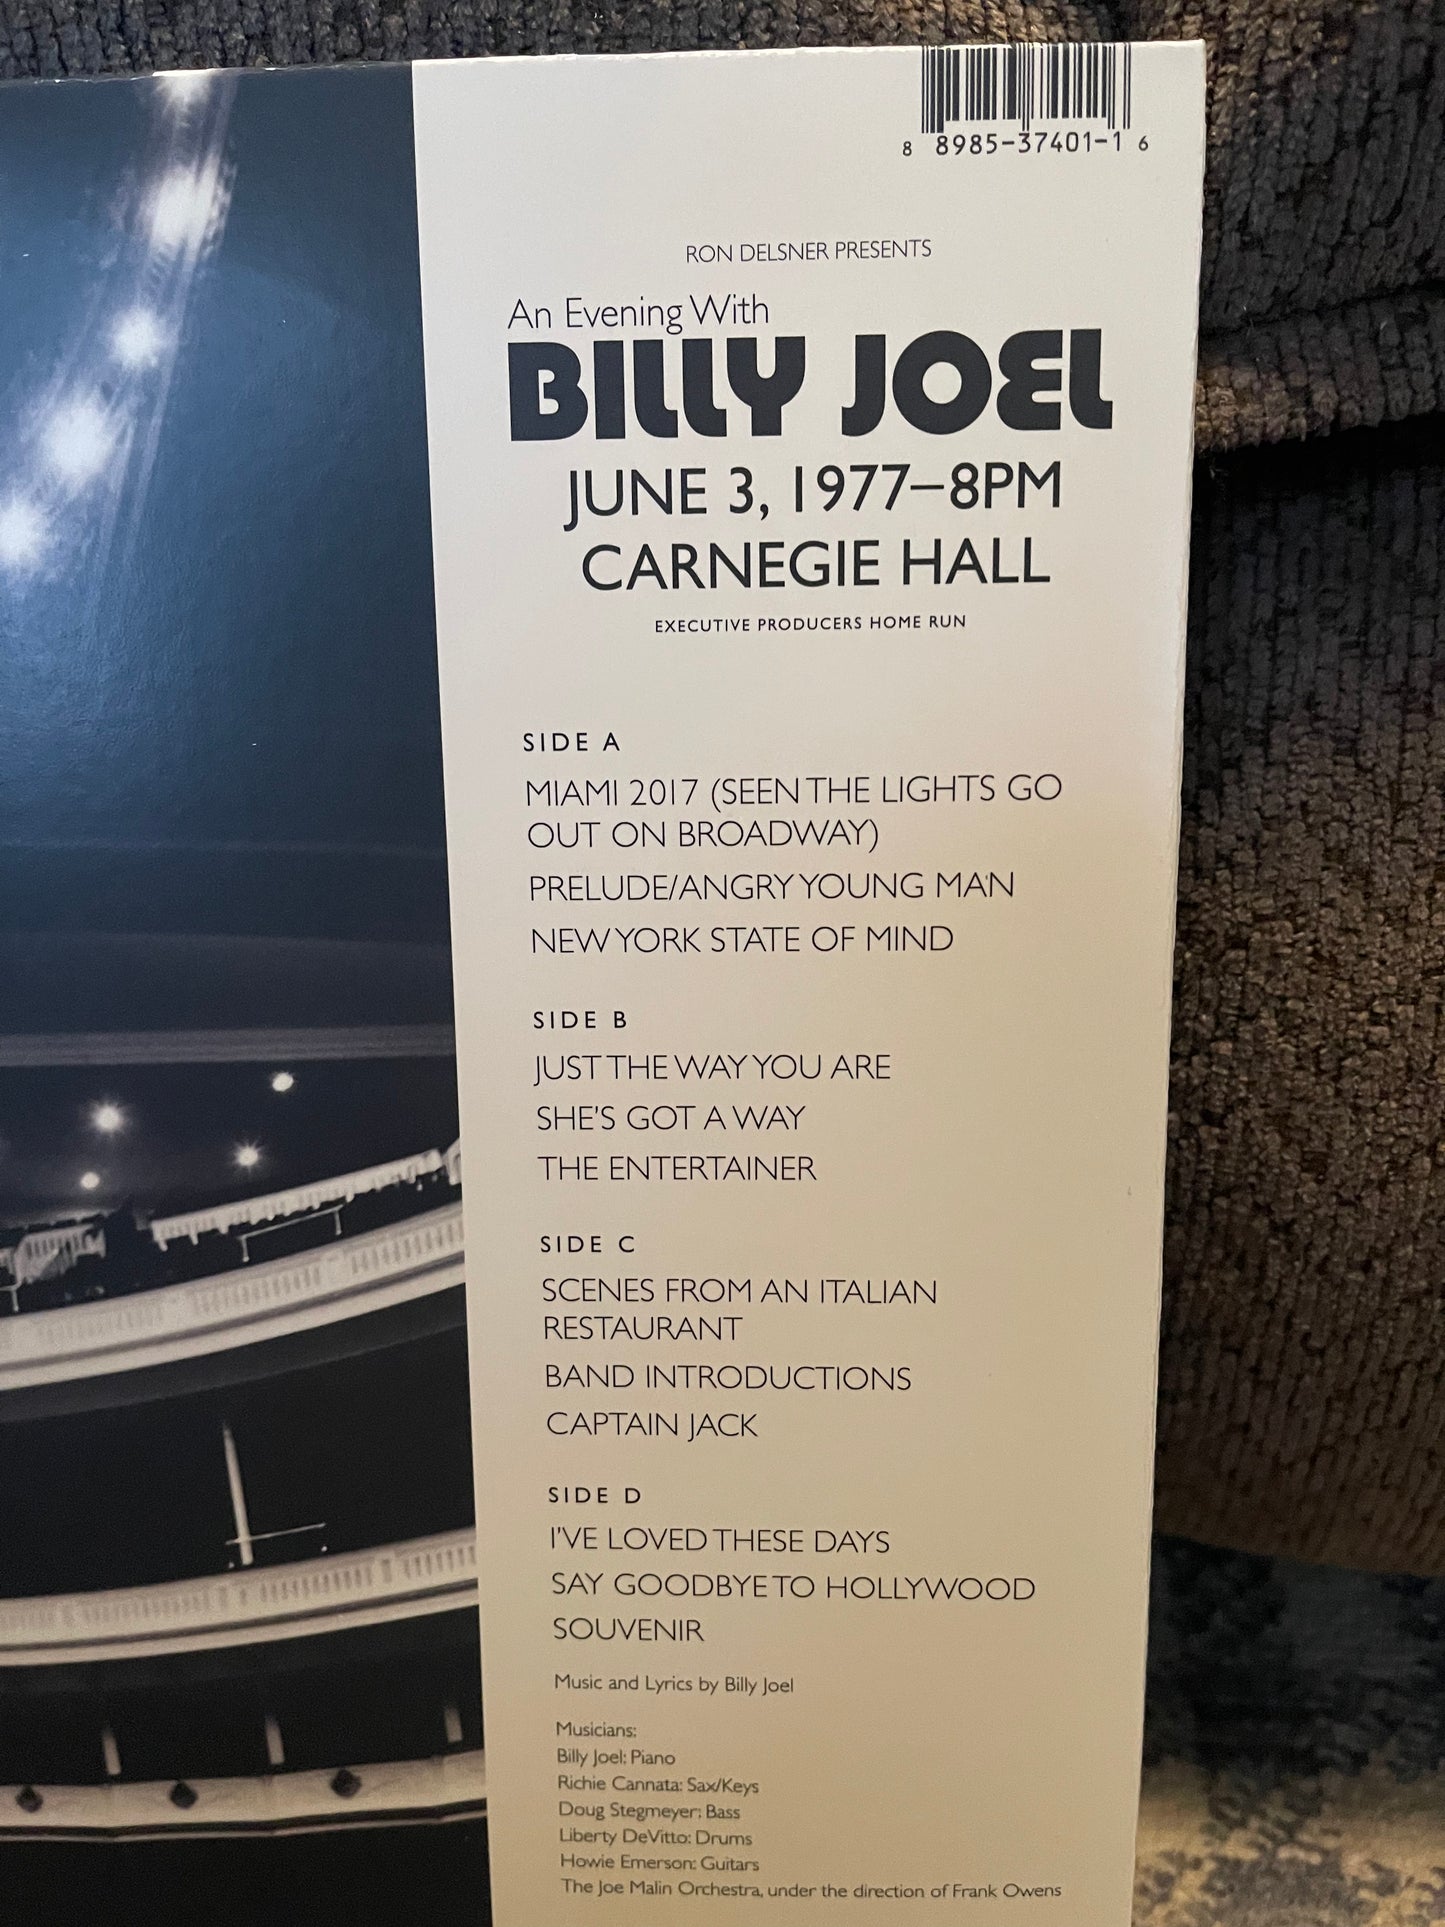 Billy Joel - Live at Carnegie Hall 1977 (JMV Consigned Item)